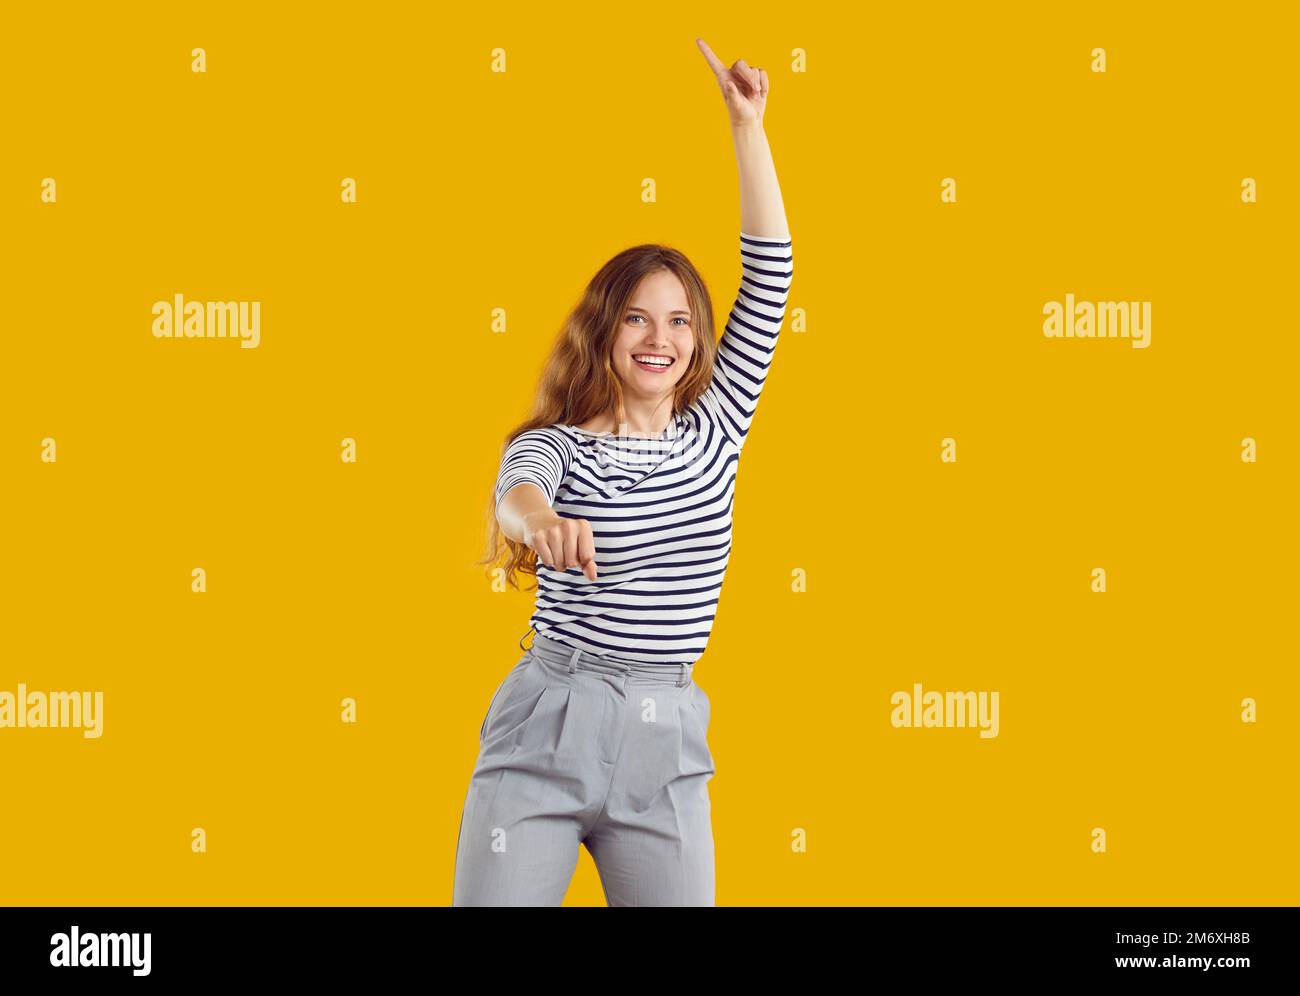 Portrait de bonne drôle jeune fille dansant et sautant isolé sur fond jaune Banque D'Images